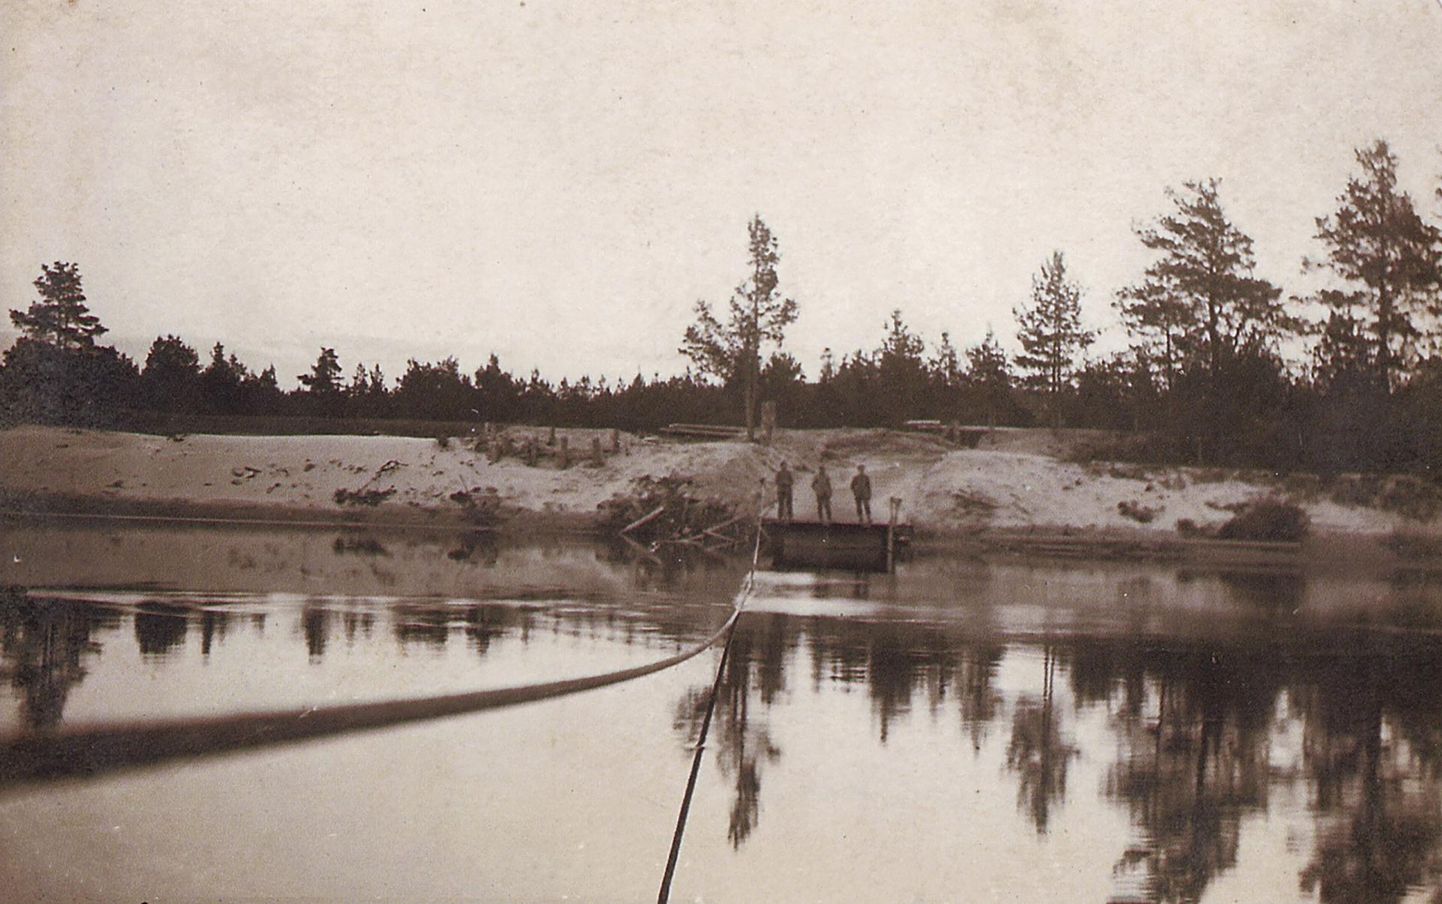 Koiva ehk Gauja jõgi mängis Landeswehri sõjas olulist rolli. Sellel fotol on jäädvustatud kolm Landeswehri meest jõe kaldal 20. juunil, seega, enne otsustavaid lahinguid.